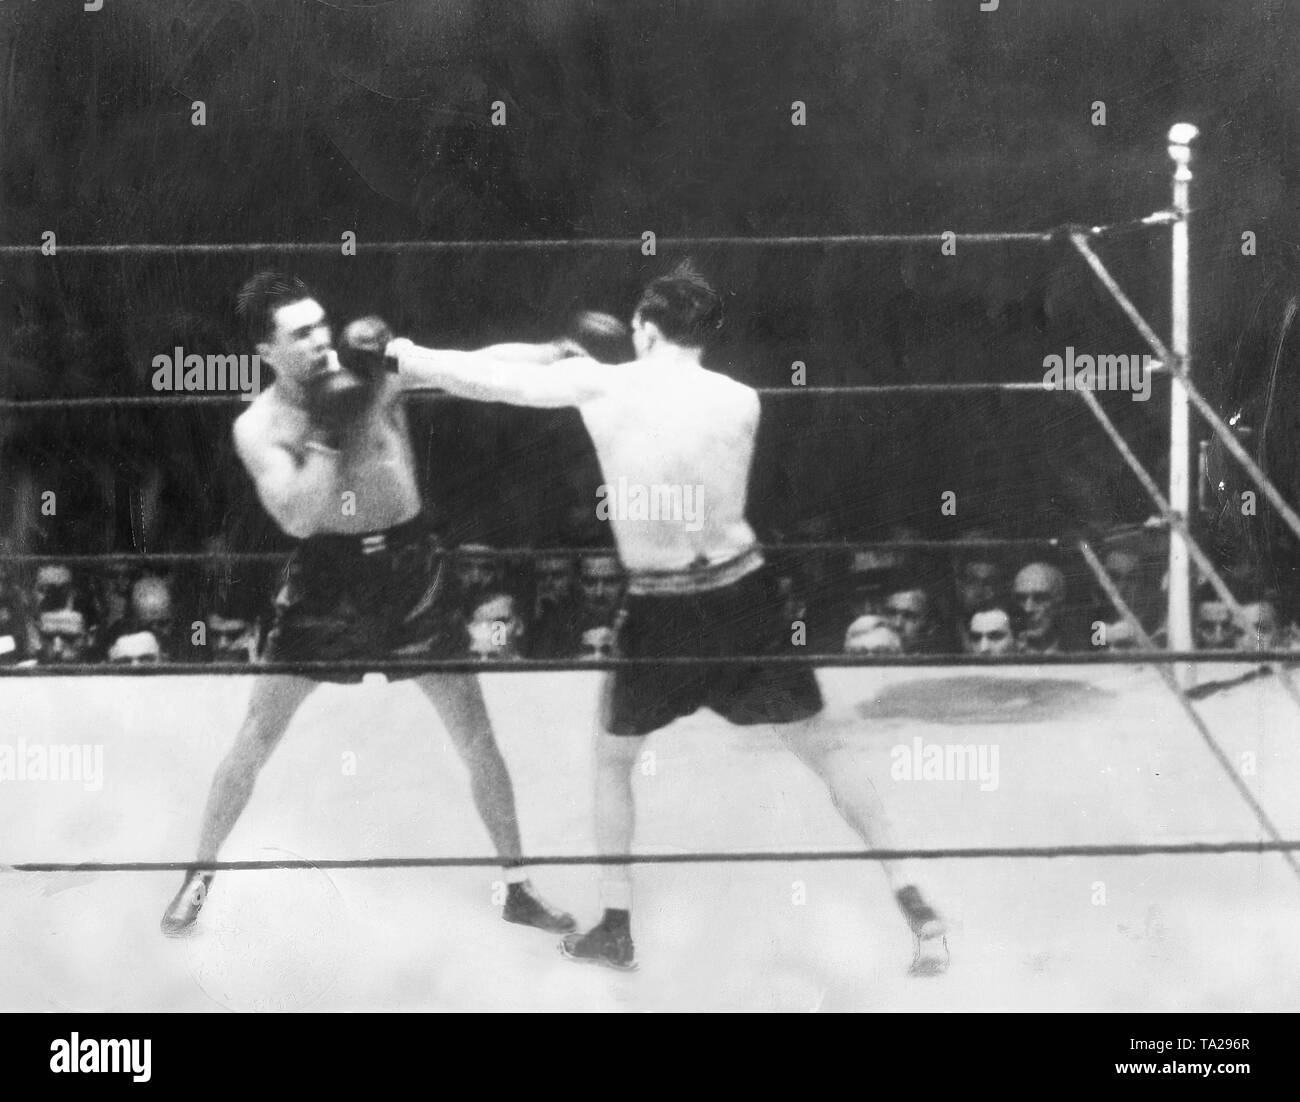 Le boxeur allemand Max Schmeling (à droite) lors du match de championnat contre le boxeur américain Jack Sharkey. Schmeling a perdu la bataille d'un point controversé, la défaite. Banque D'Images